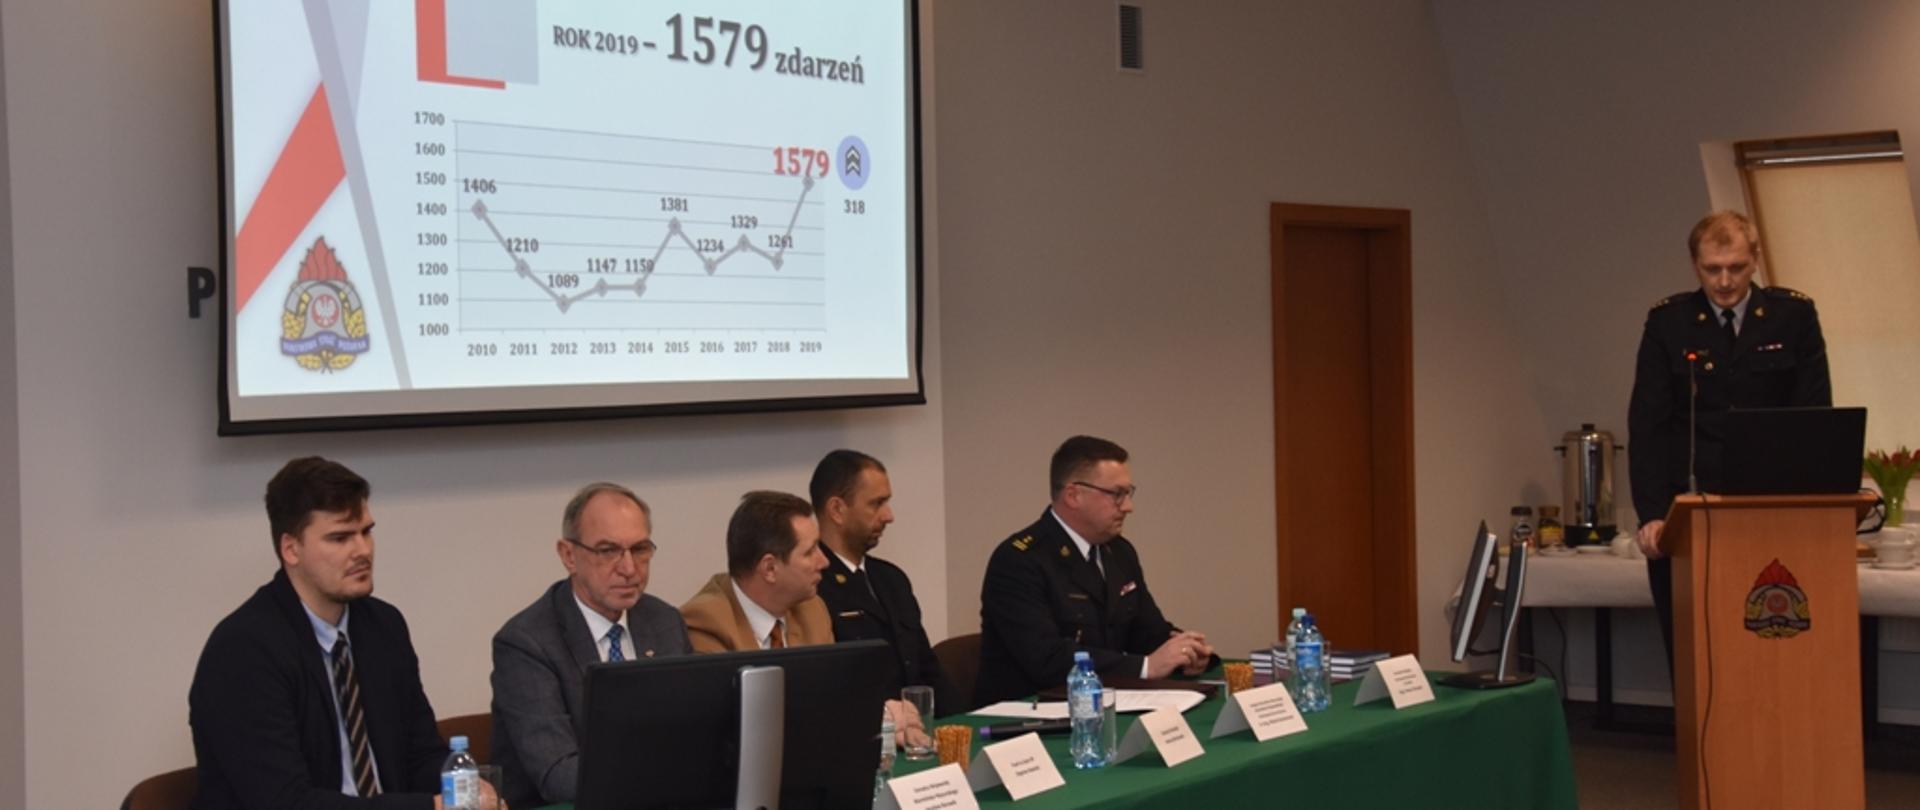 Kpt. Rafał Napiórkowski przedstawia prezentację dotyczącą ilości zdarzeń w roku 2019.